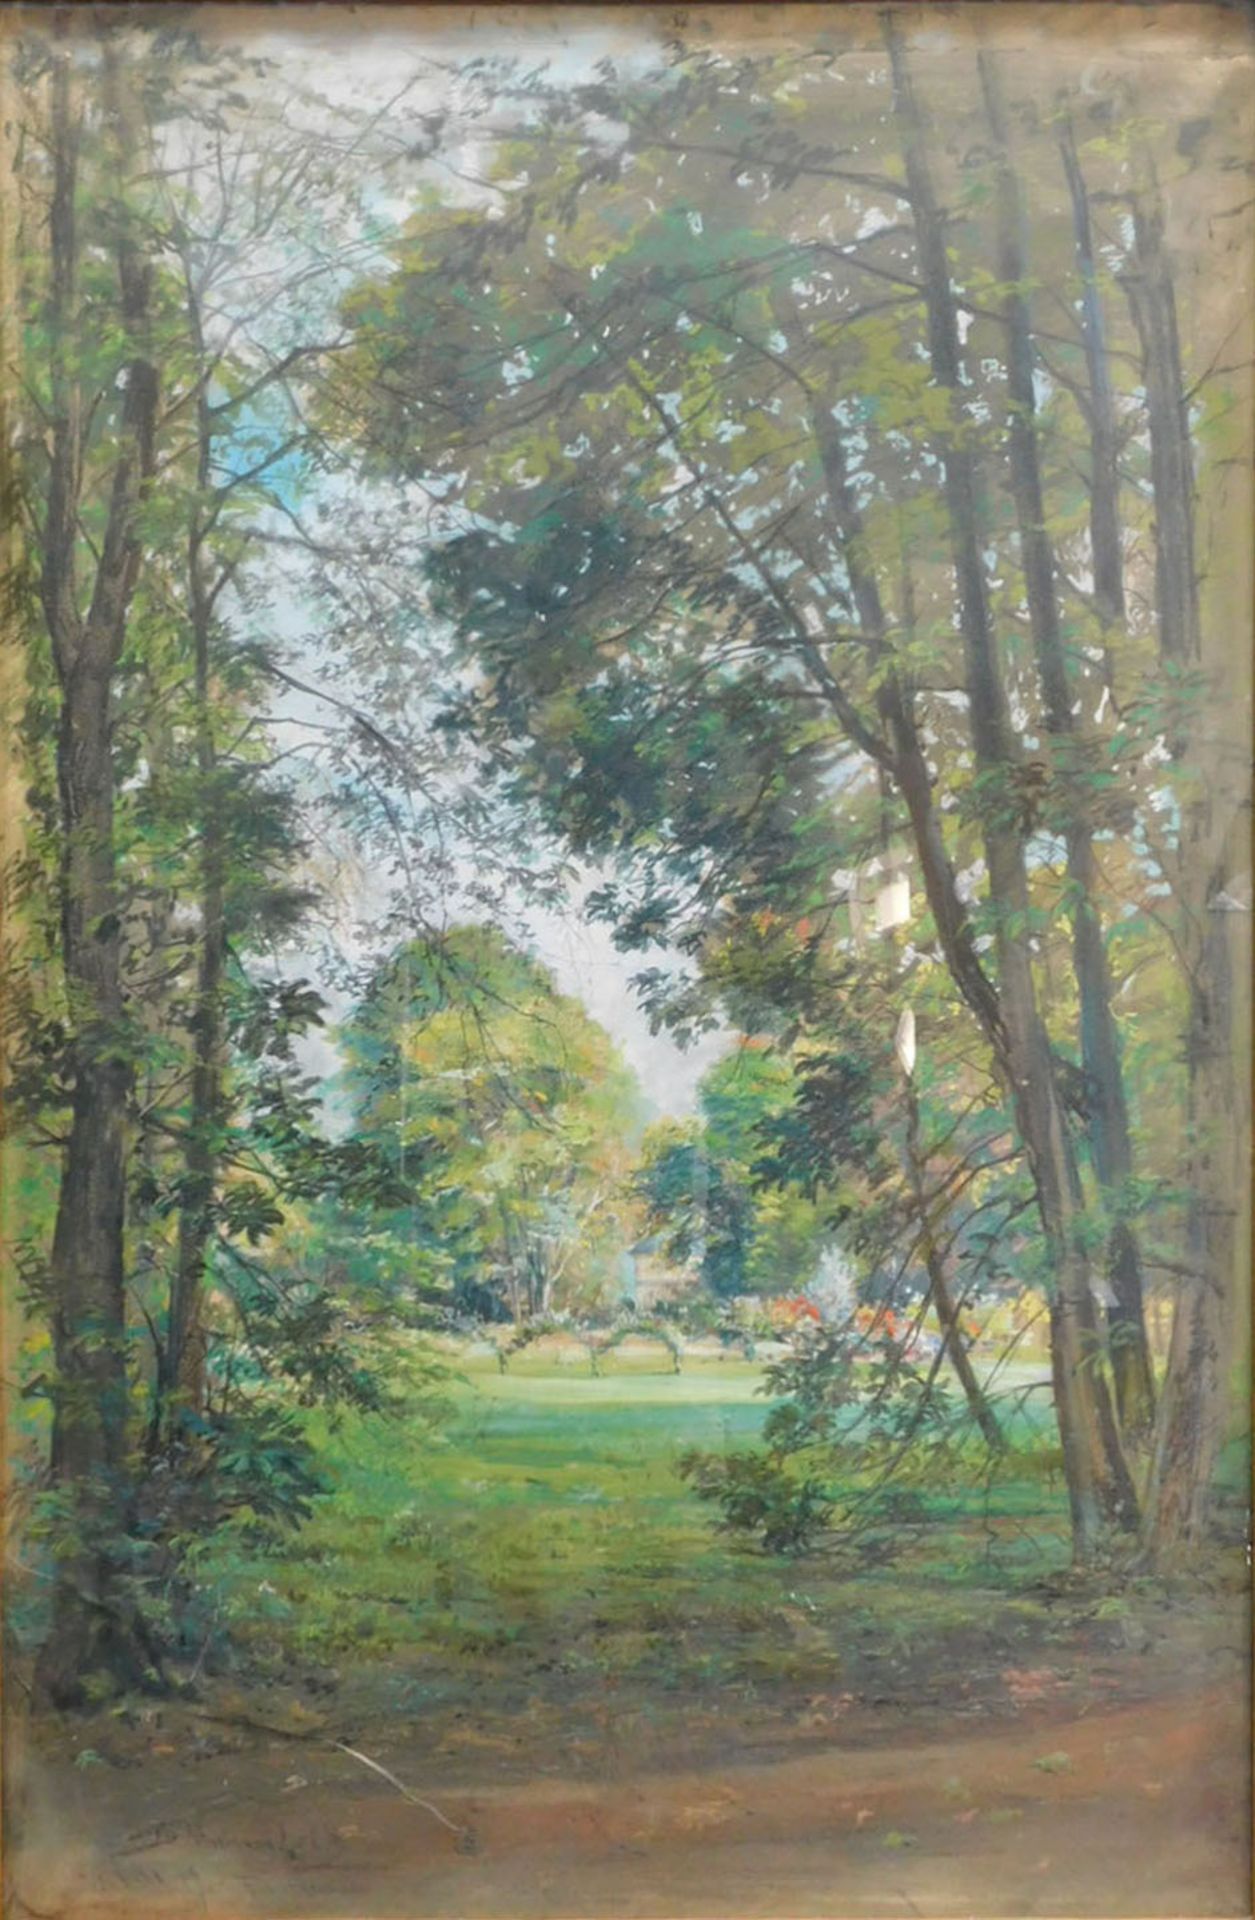 Bernhard K. J. MANNFELD (1848 - 1925). "Sommergarten". 1889.